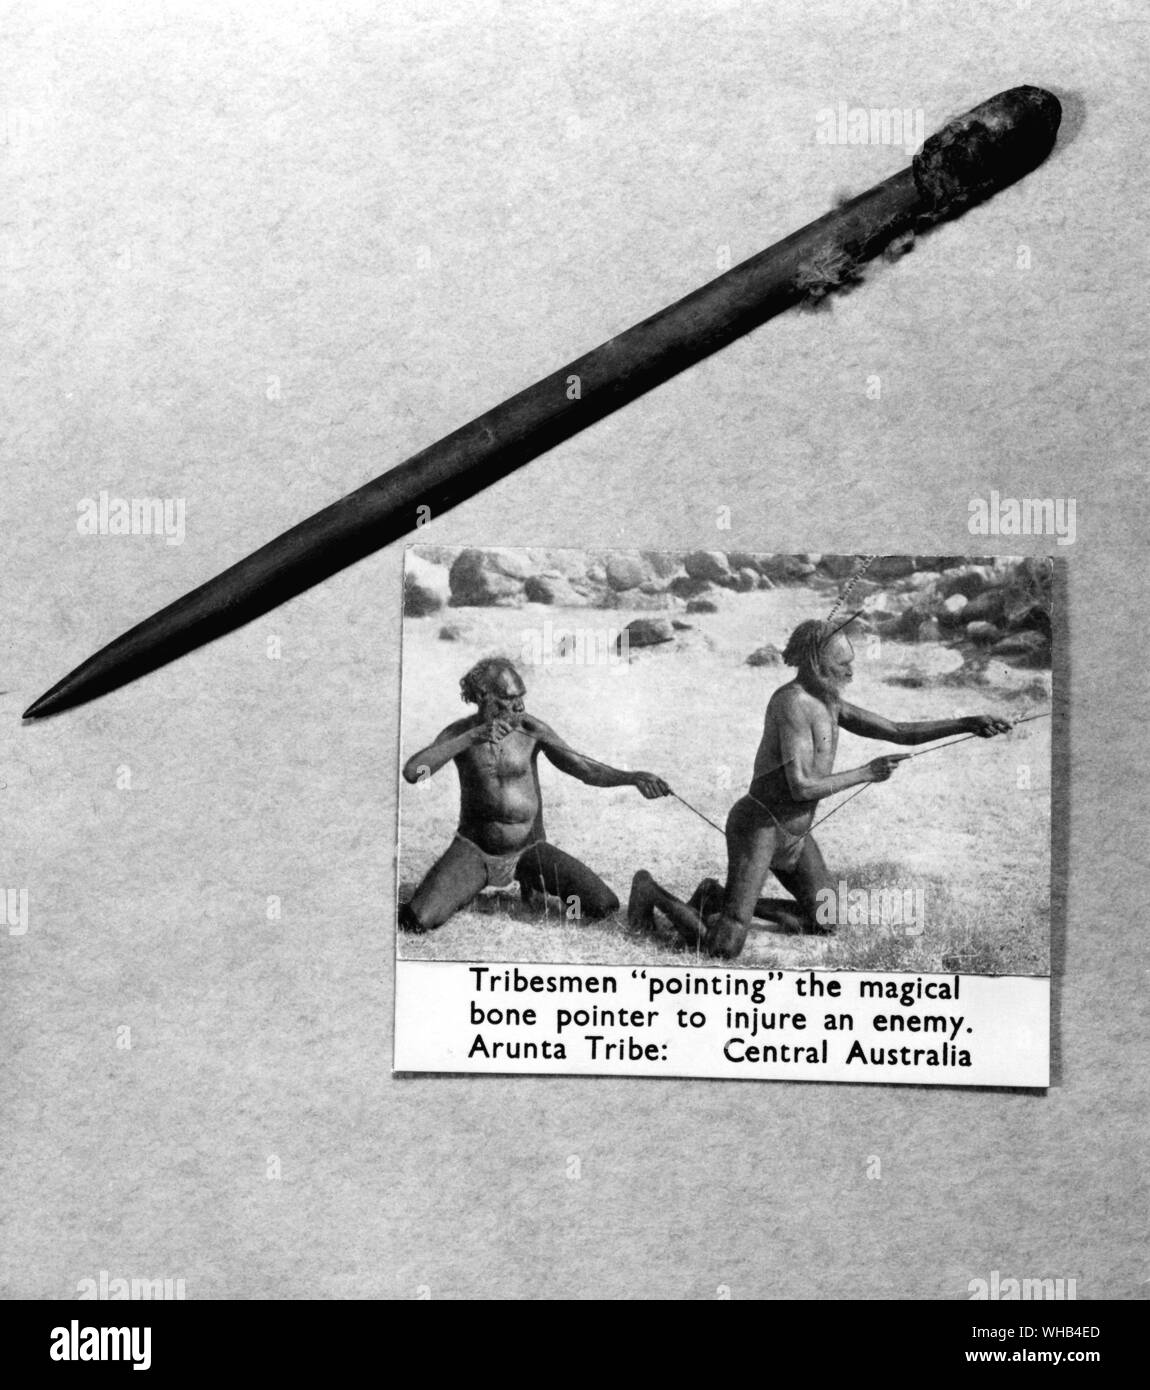 Stammesangehörige nach den magischen Knochen Zeiger, um einen Feind zu verletzen. Arunta Stamm im Zentrum von Australien. Stockfoto